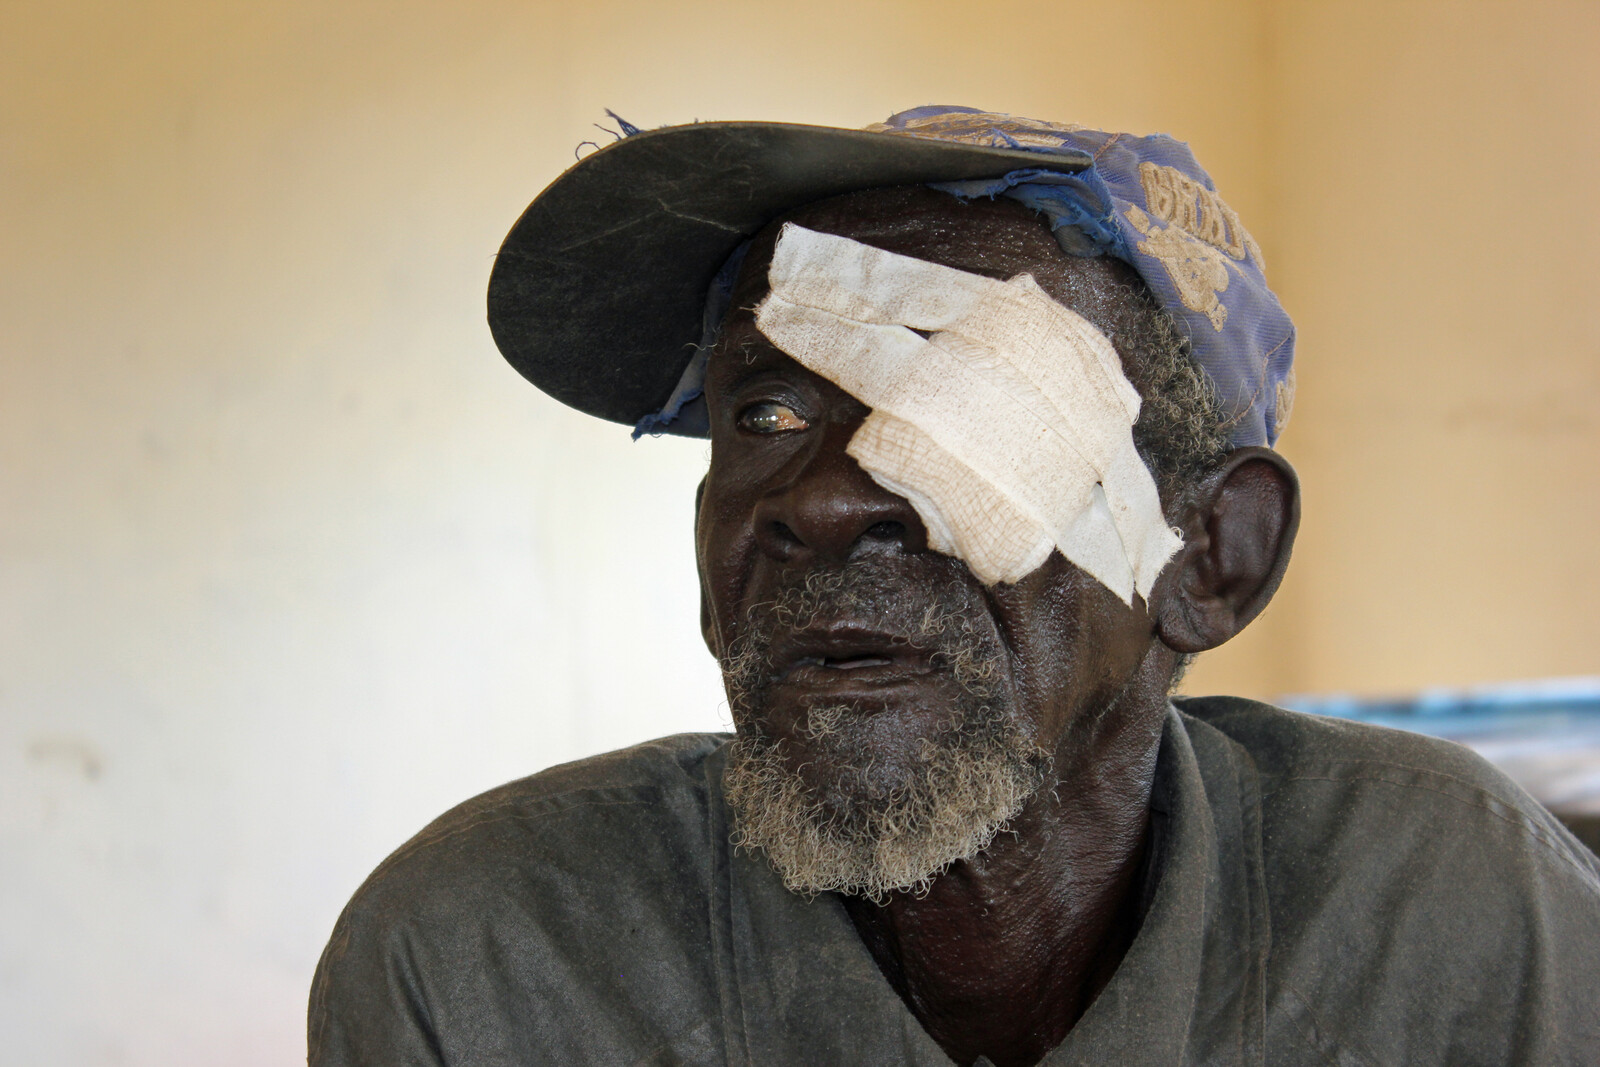 Unser Bündnismitglied HelpAge hilft älteren Menschen auf der Flucht. So wie Khor, einem Mann aus dem Südsudan.